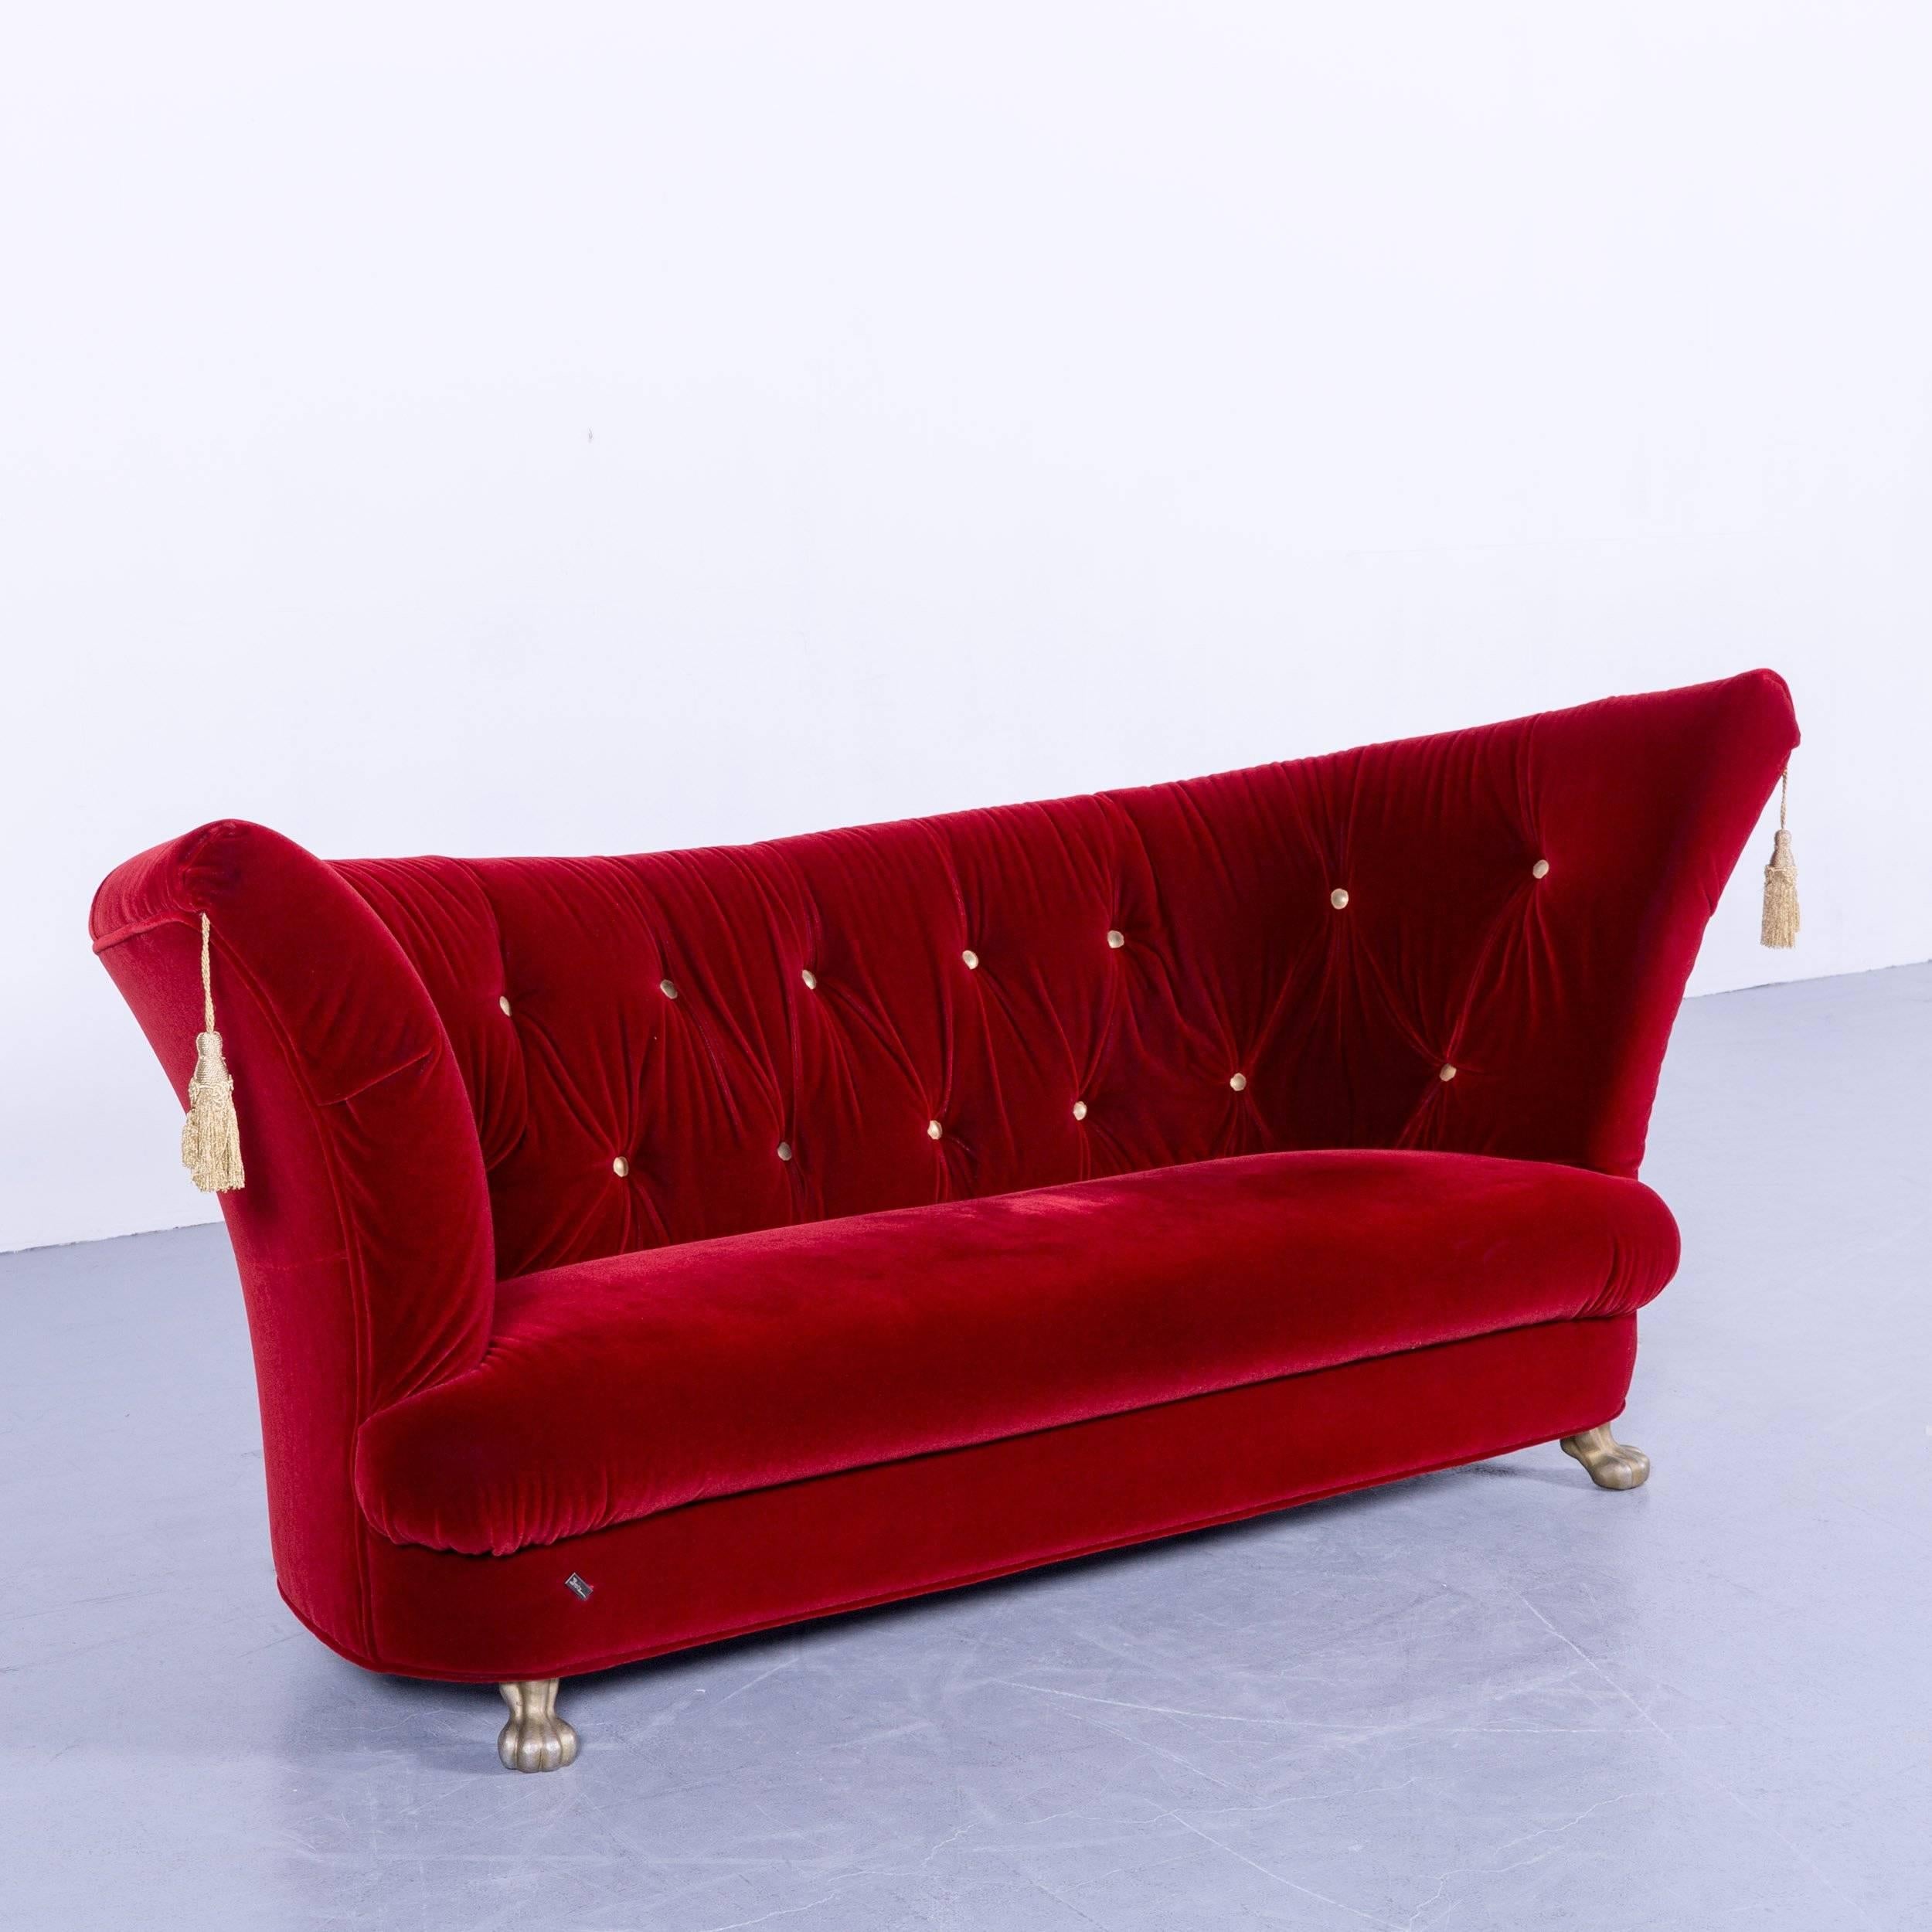 Bretz Nana designer sofa velvet fabric red, in an elegant design, made for pure comfort and style.